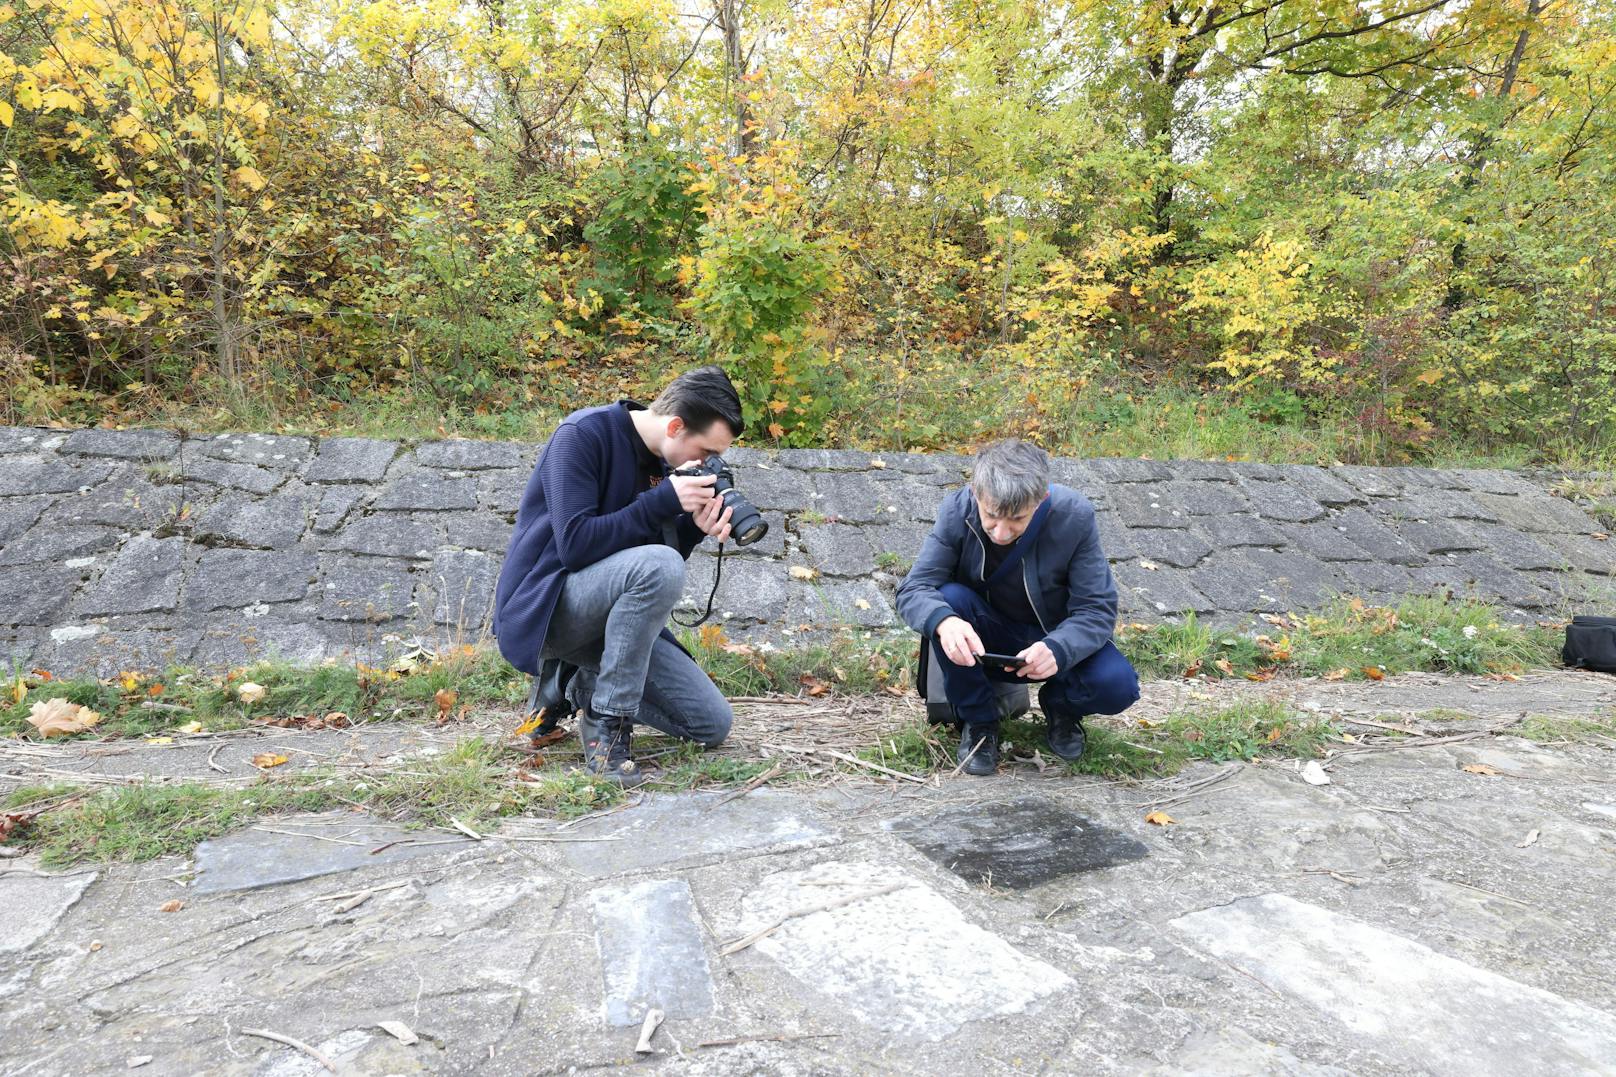 Lukas (l.) und Marcello von den "Wiener Unterwelten" dokumentieren und erforschen den Fund.